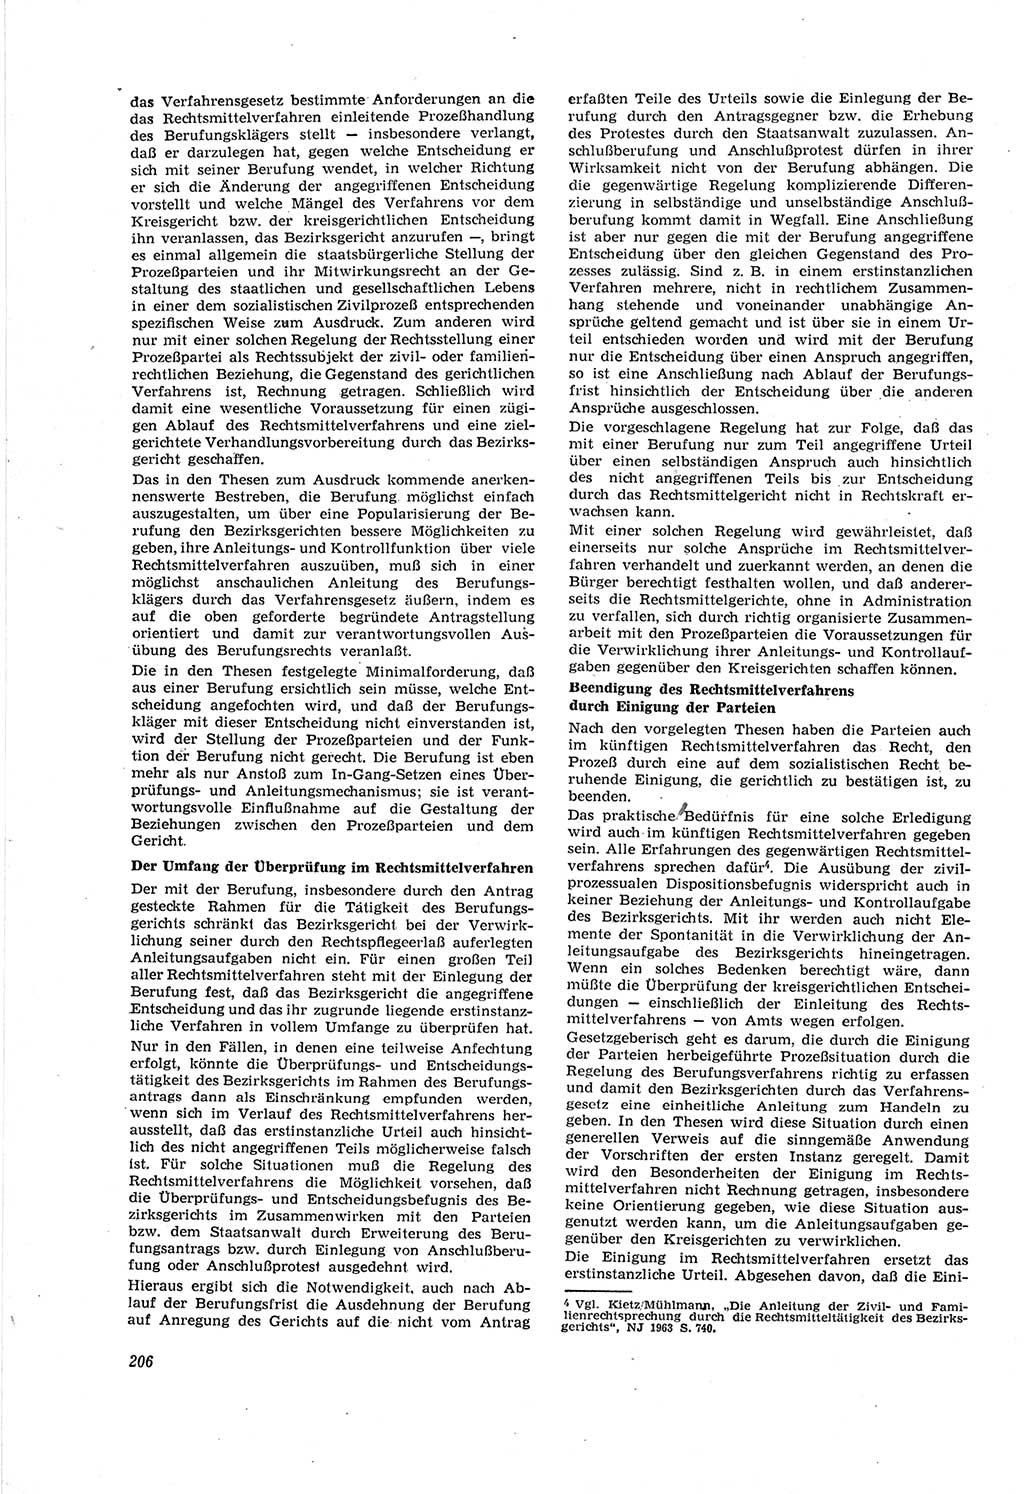 Neue Justiz (NJ), Zeitschrift für Recht und Rechtswissenschaft [Deutsche Demokratische Republik (DDR)], 18. Jahrgang 1964, Seite 206 (NJ DDR 1964, S. 206)